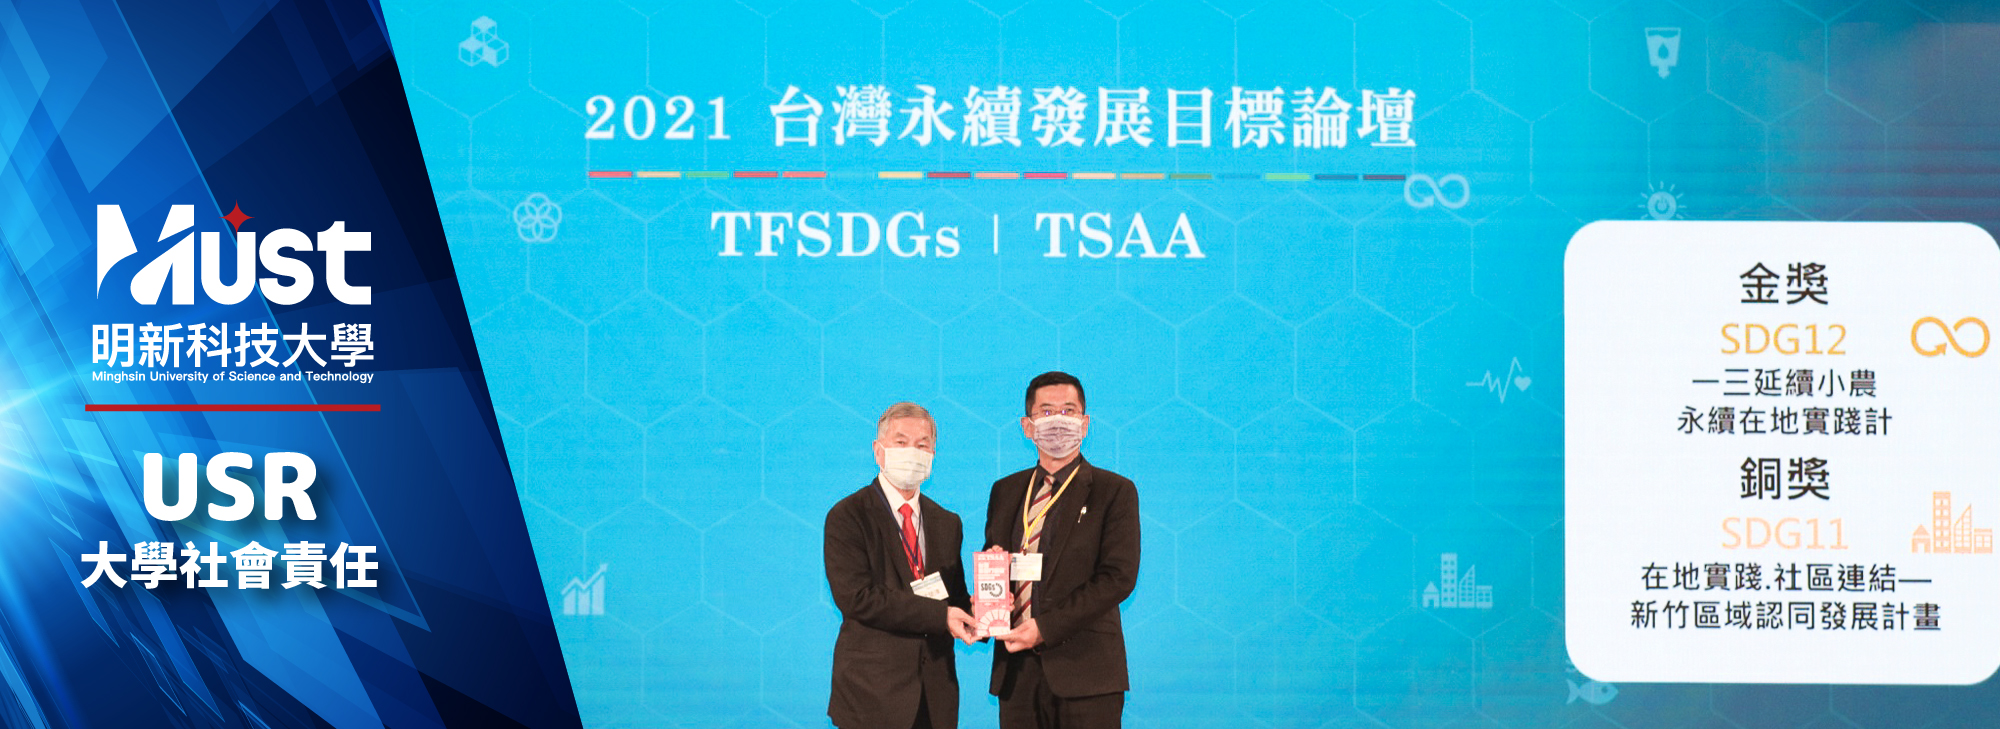 20220131 校首頁 研發處 賀本校榮獲2021首屆「TSAA台灣永續行動獎」金獎、銅獎2-01